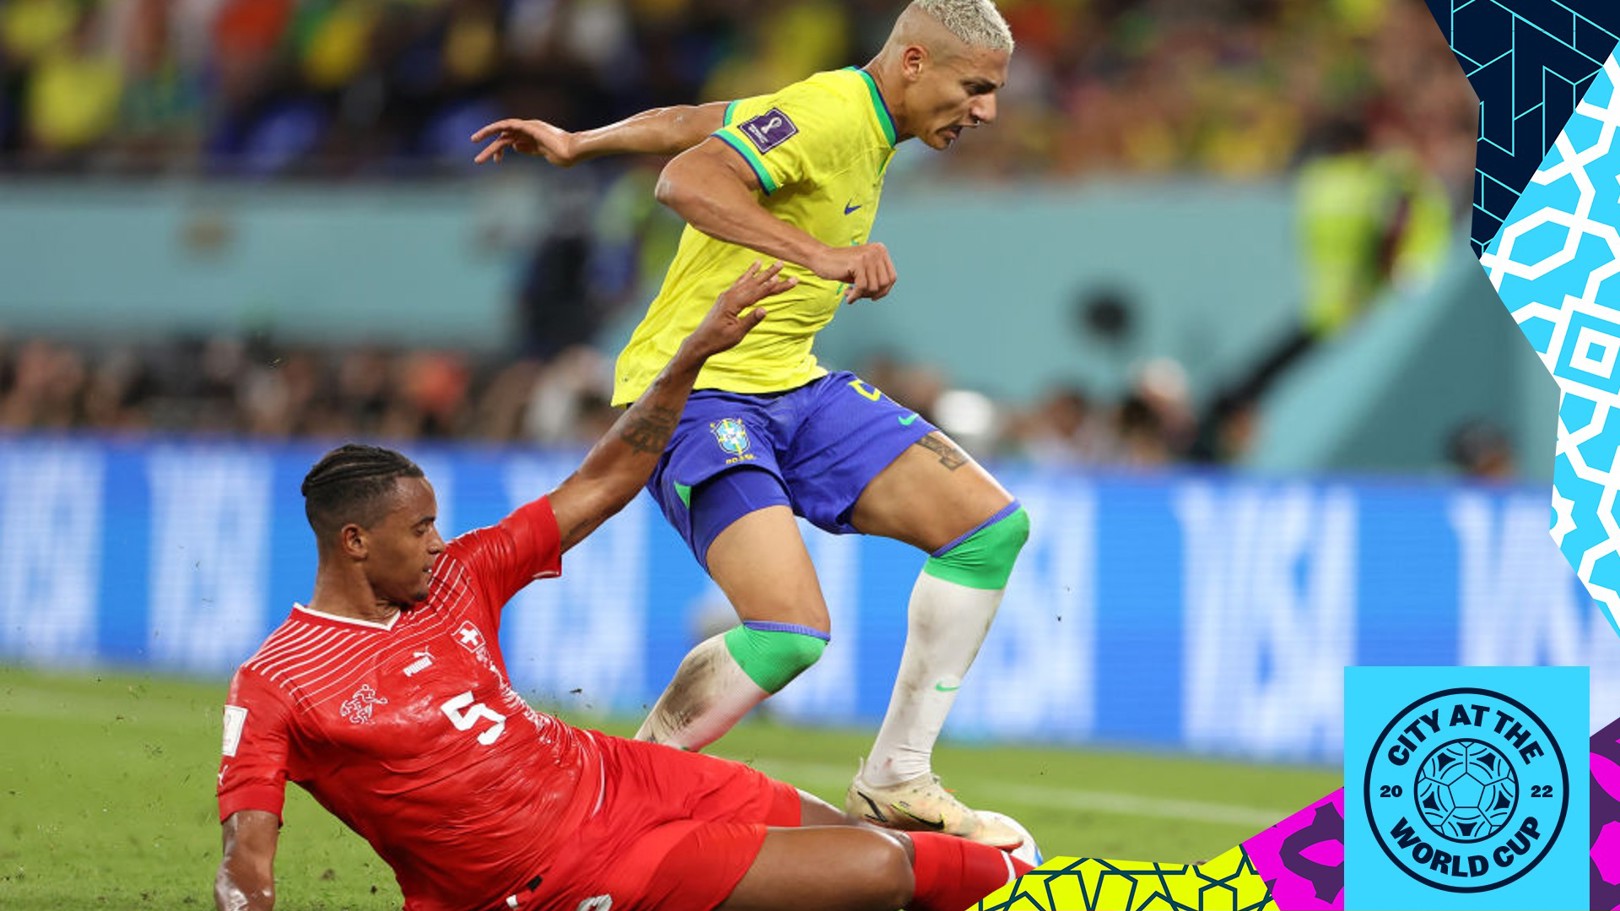 Copa do Mundo 2022: Quem vai ganhar o jogo Brasil x Sérvia? FIFA 23 responde